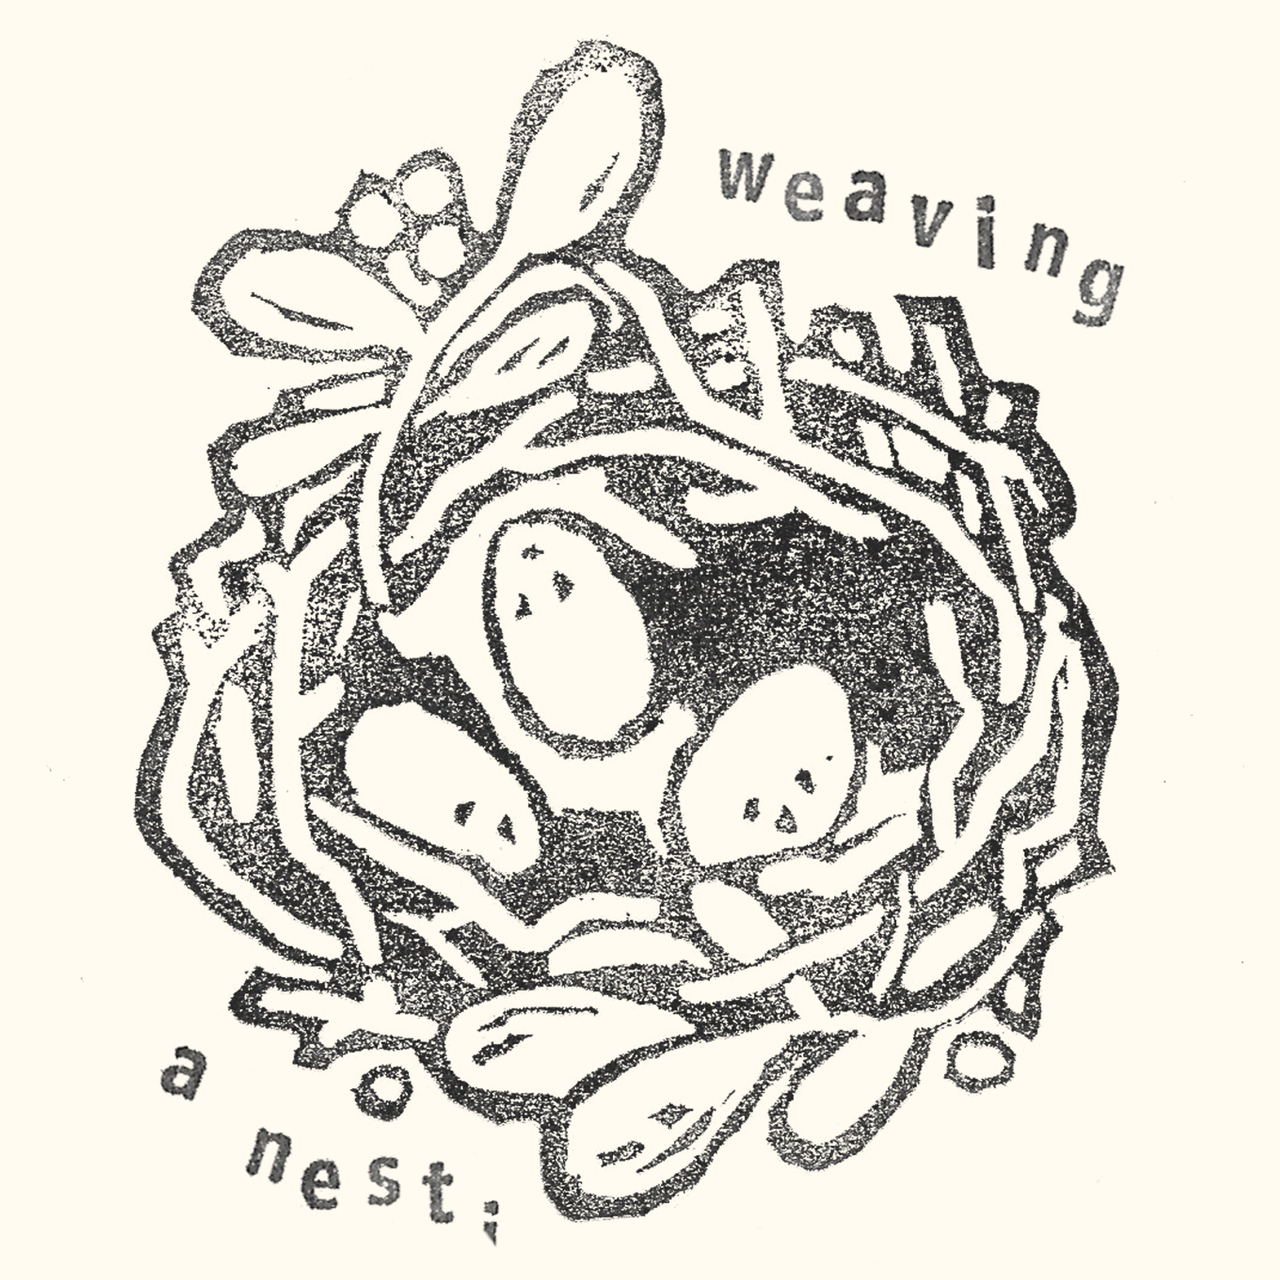 Weaving a nest;